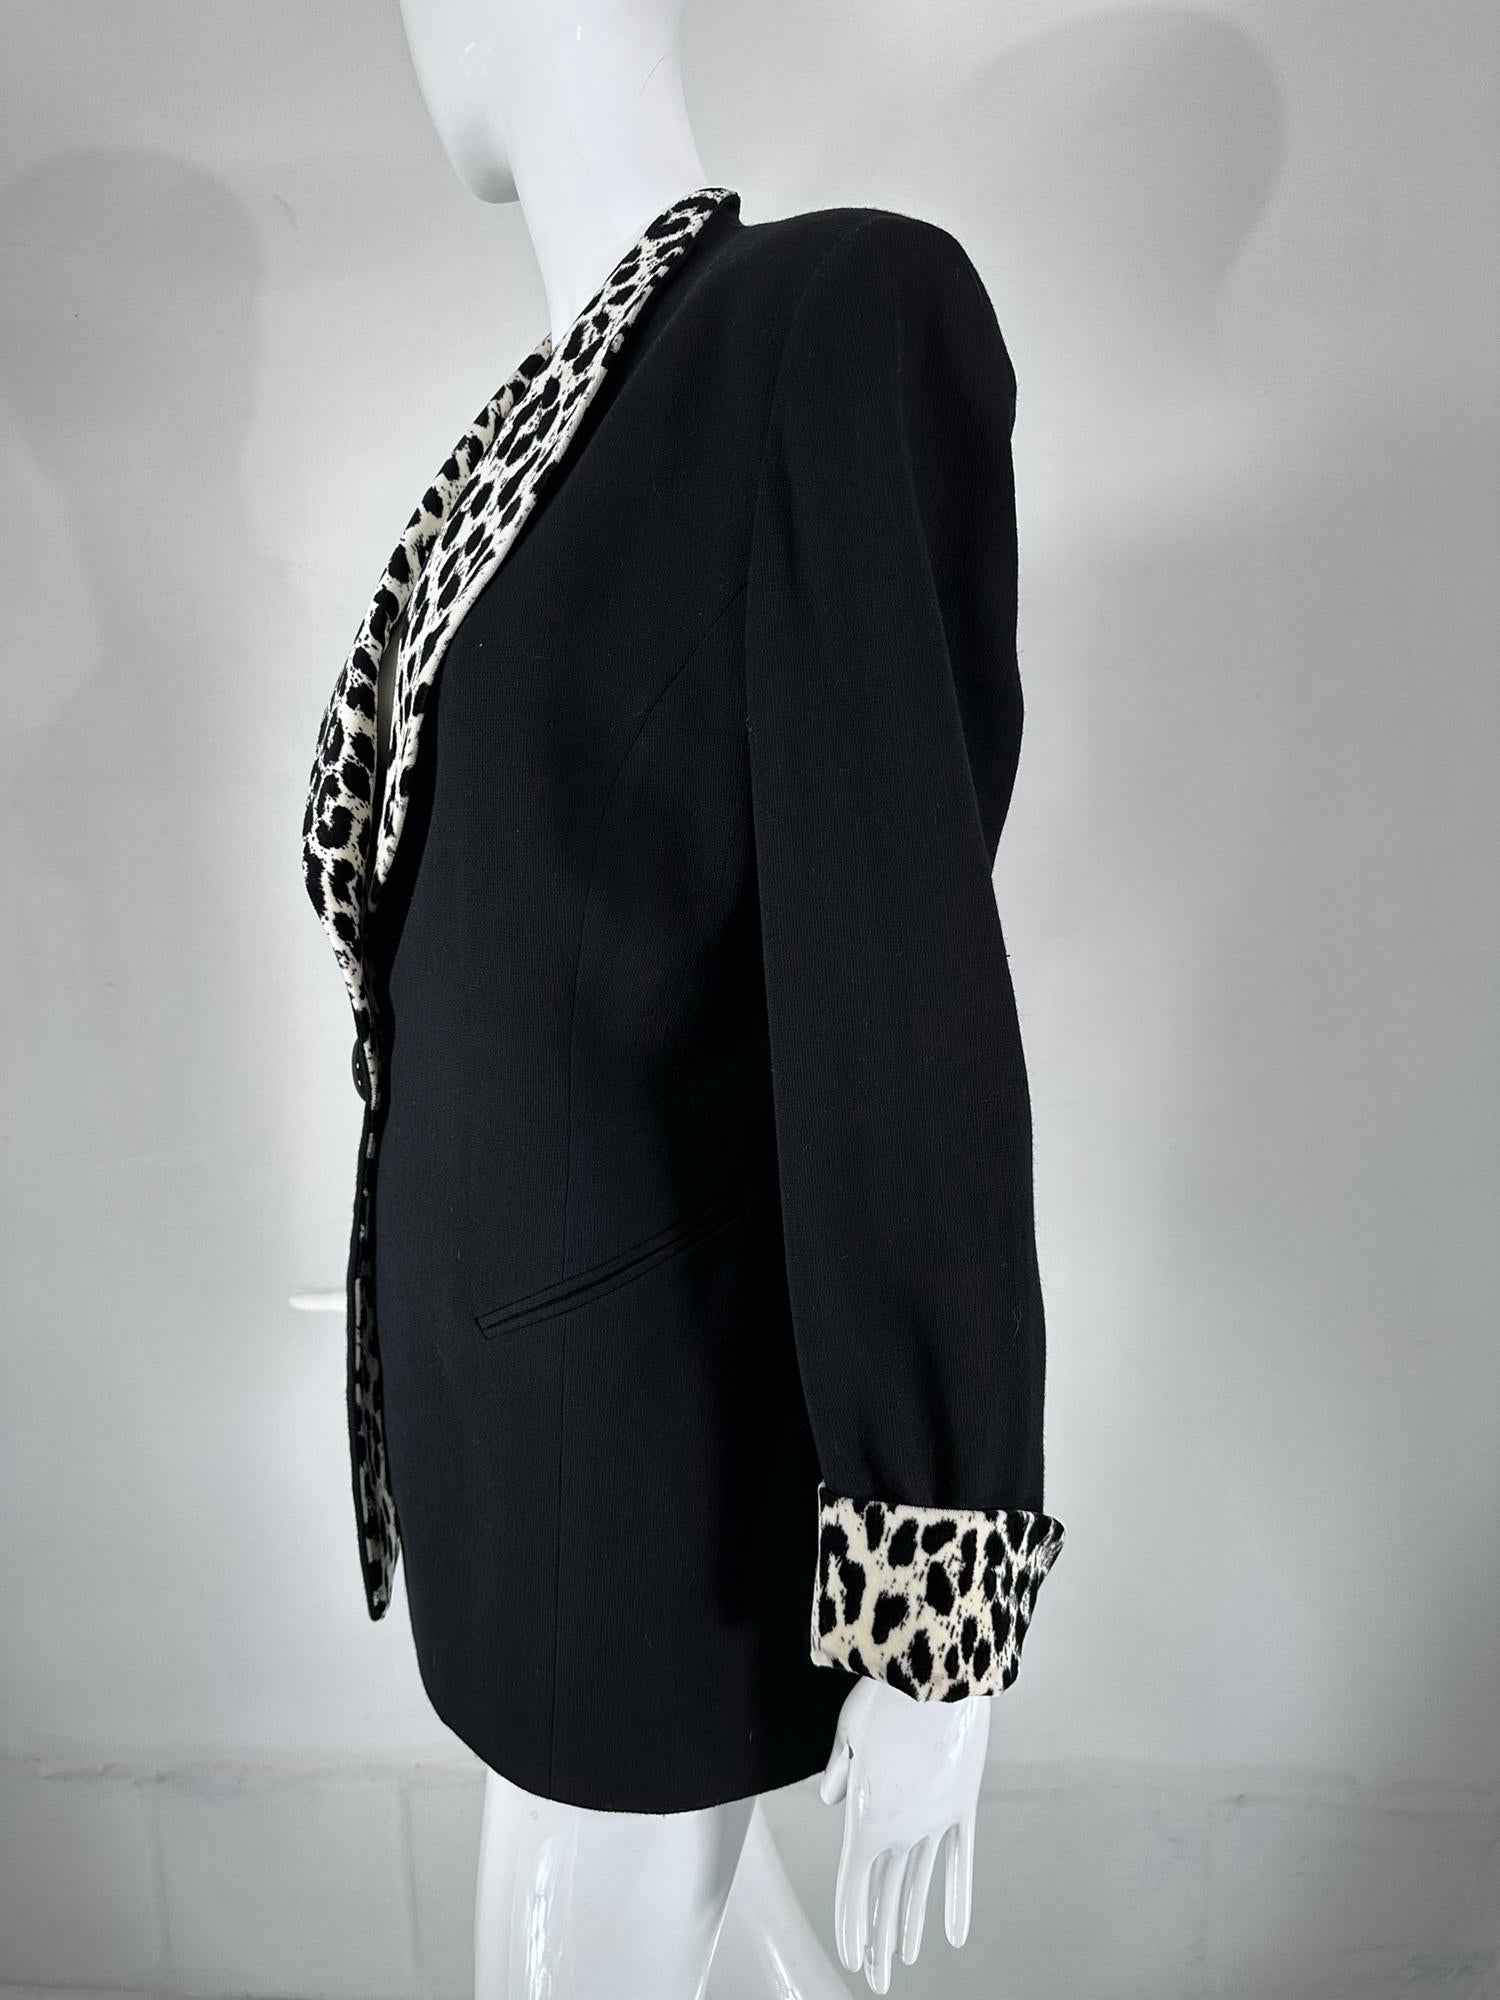 Christian Dior Black Princess Seam Tuxedo Jacket Black White Velvet Lapels 1990s For Sale 5